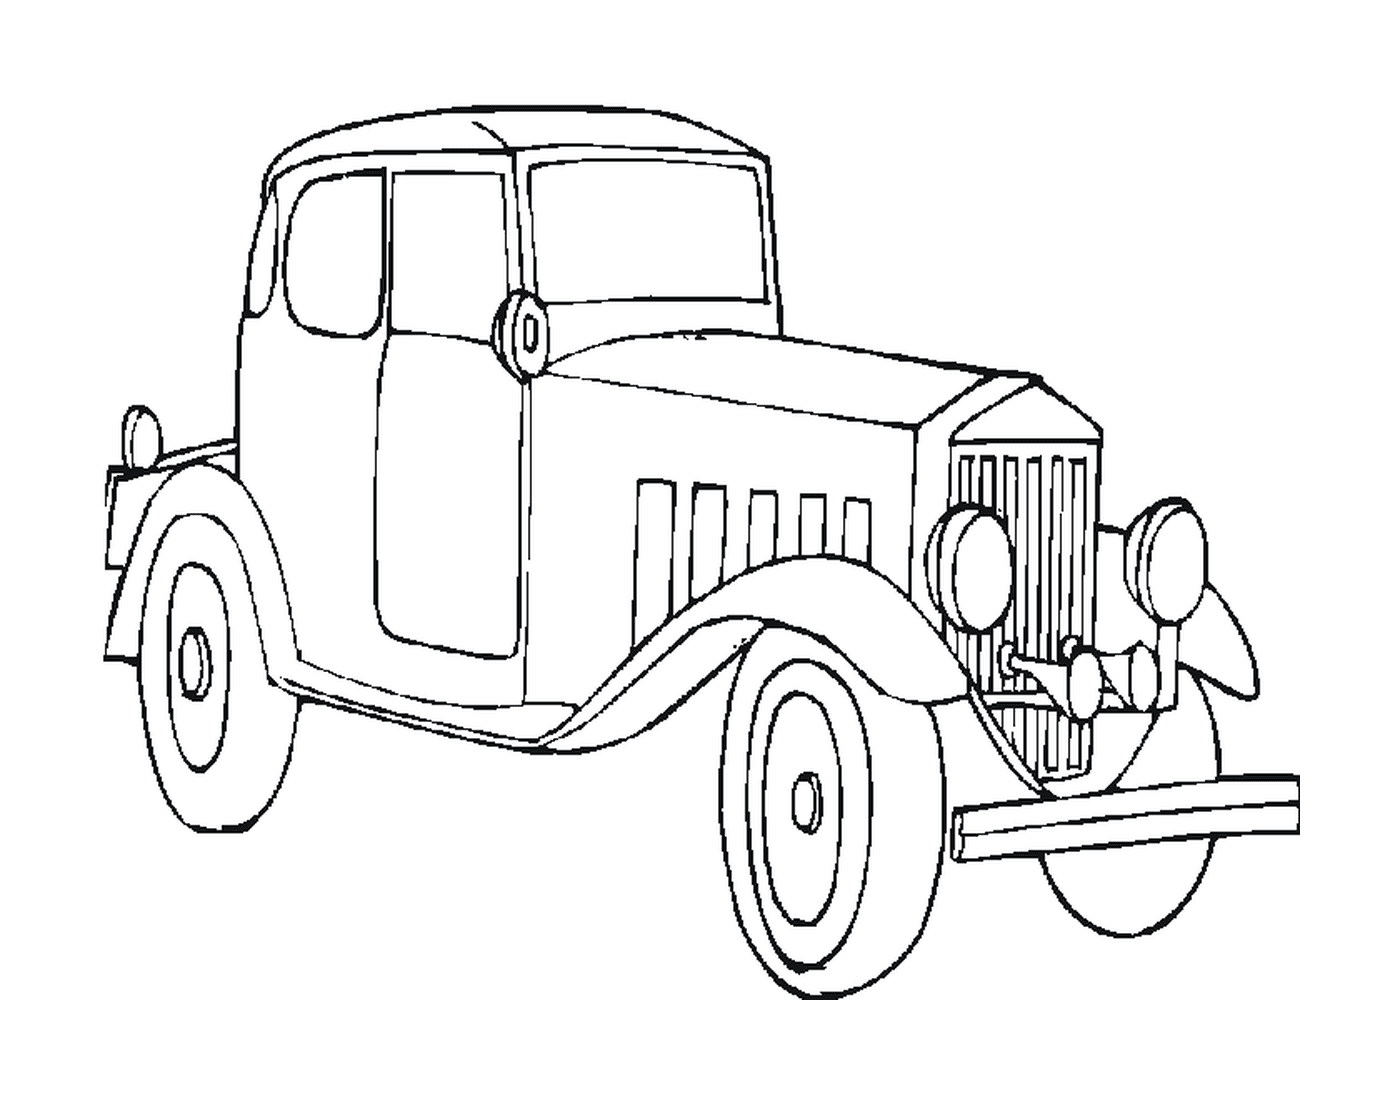  Vecchia automobile disegnata 